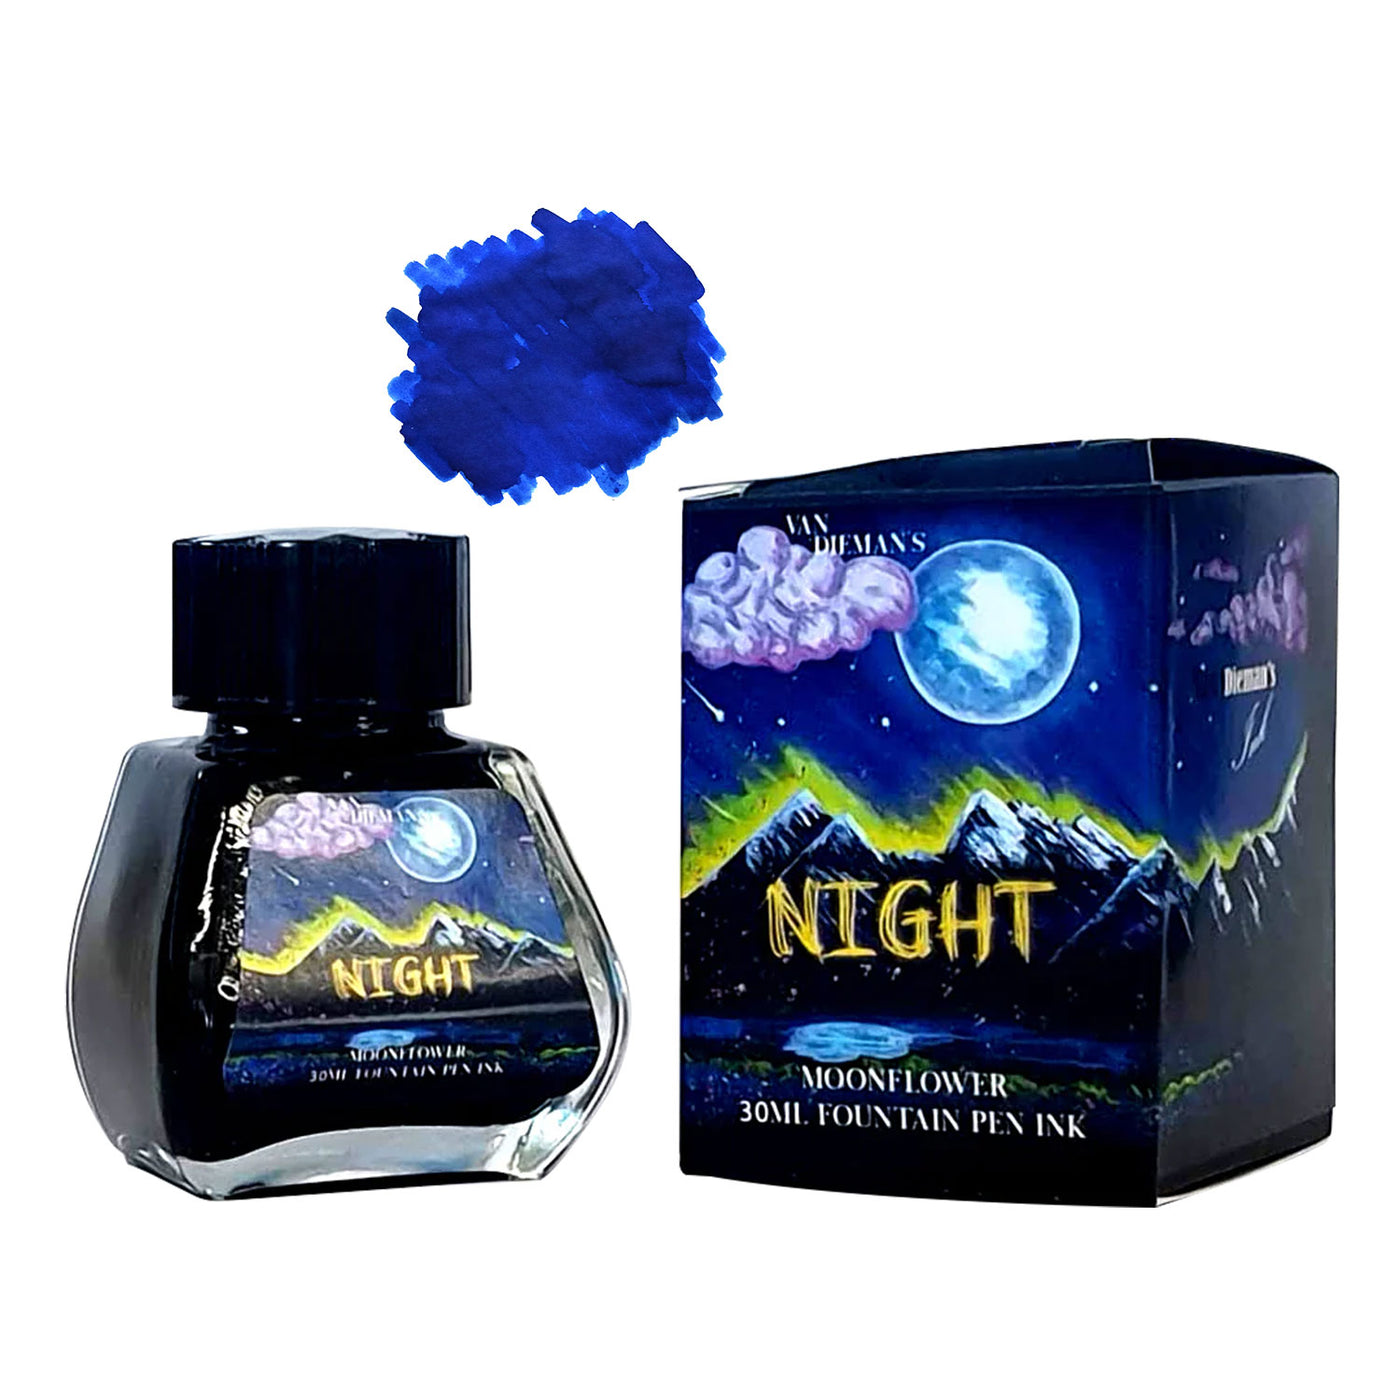 Van Dieman's Night Ink Bottle, Moon Flower - 30ml